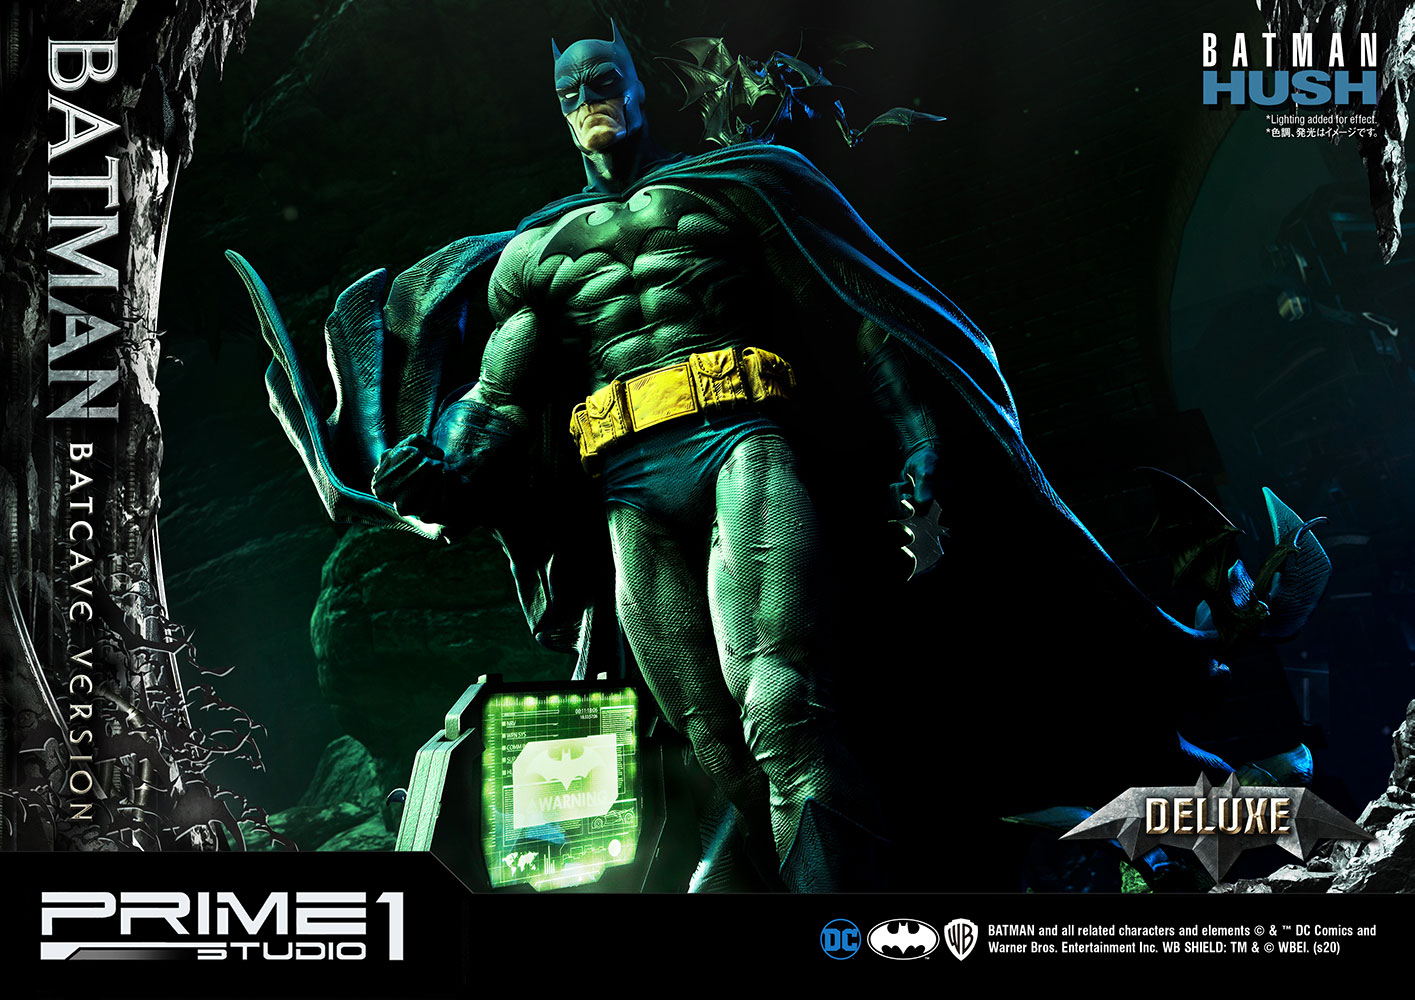 Batman Batcave Deluxe Version (Prototype Shown) View 6